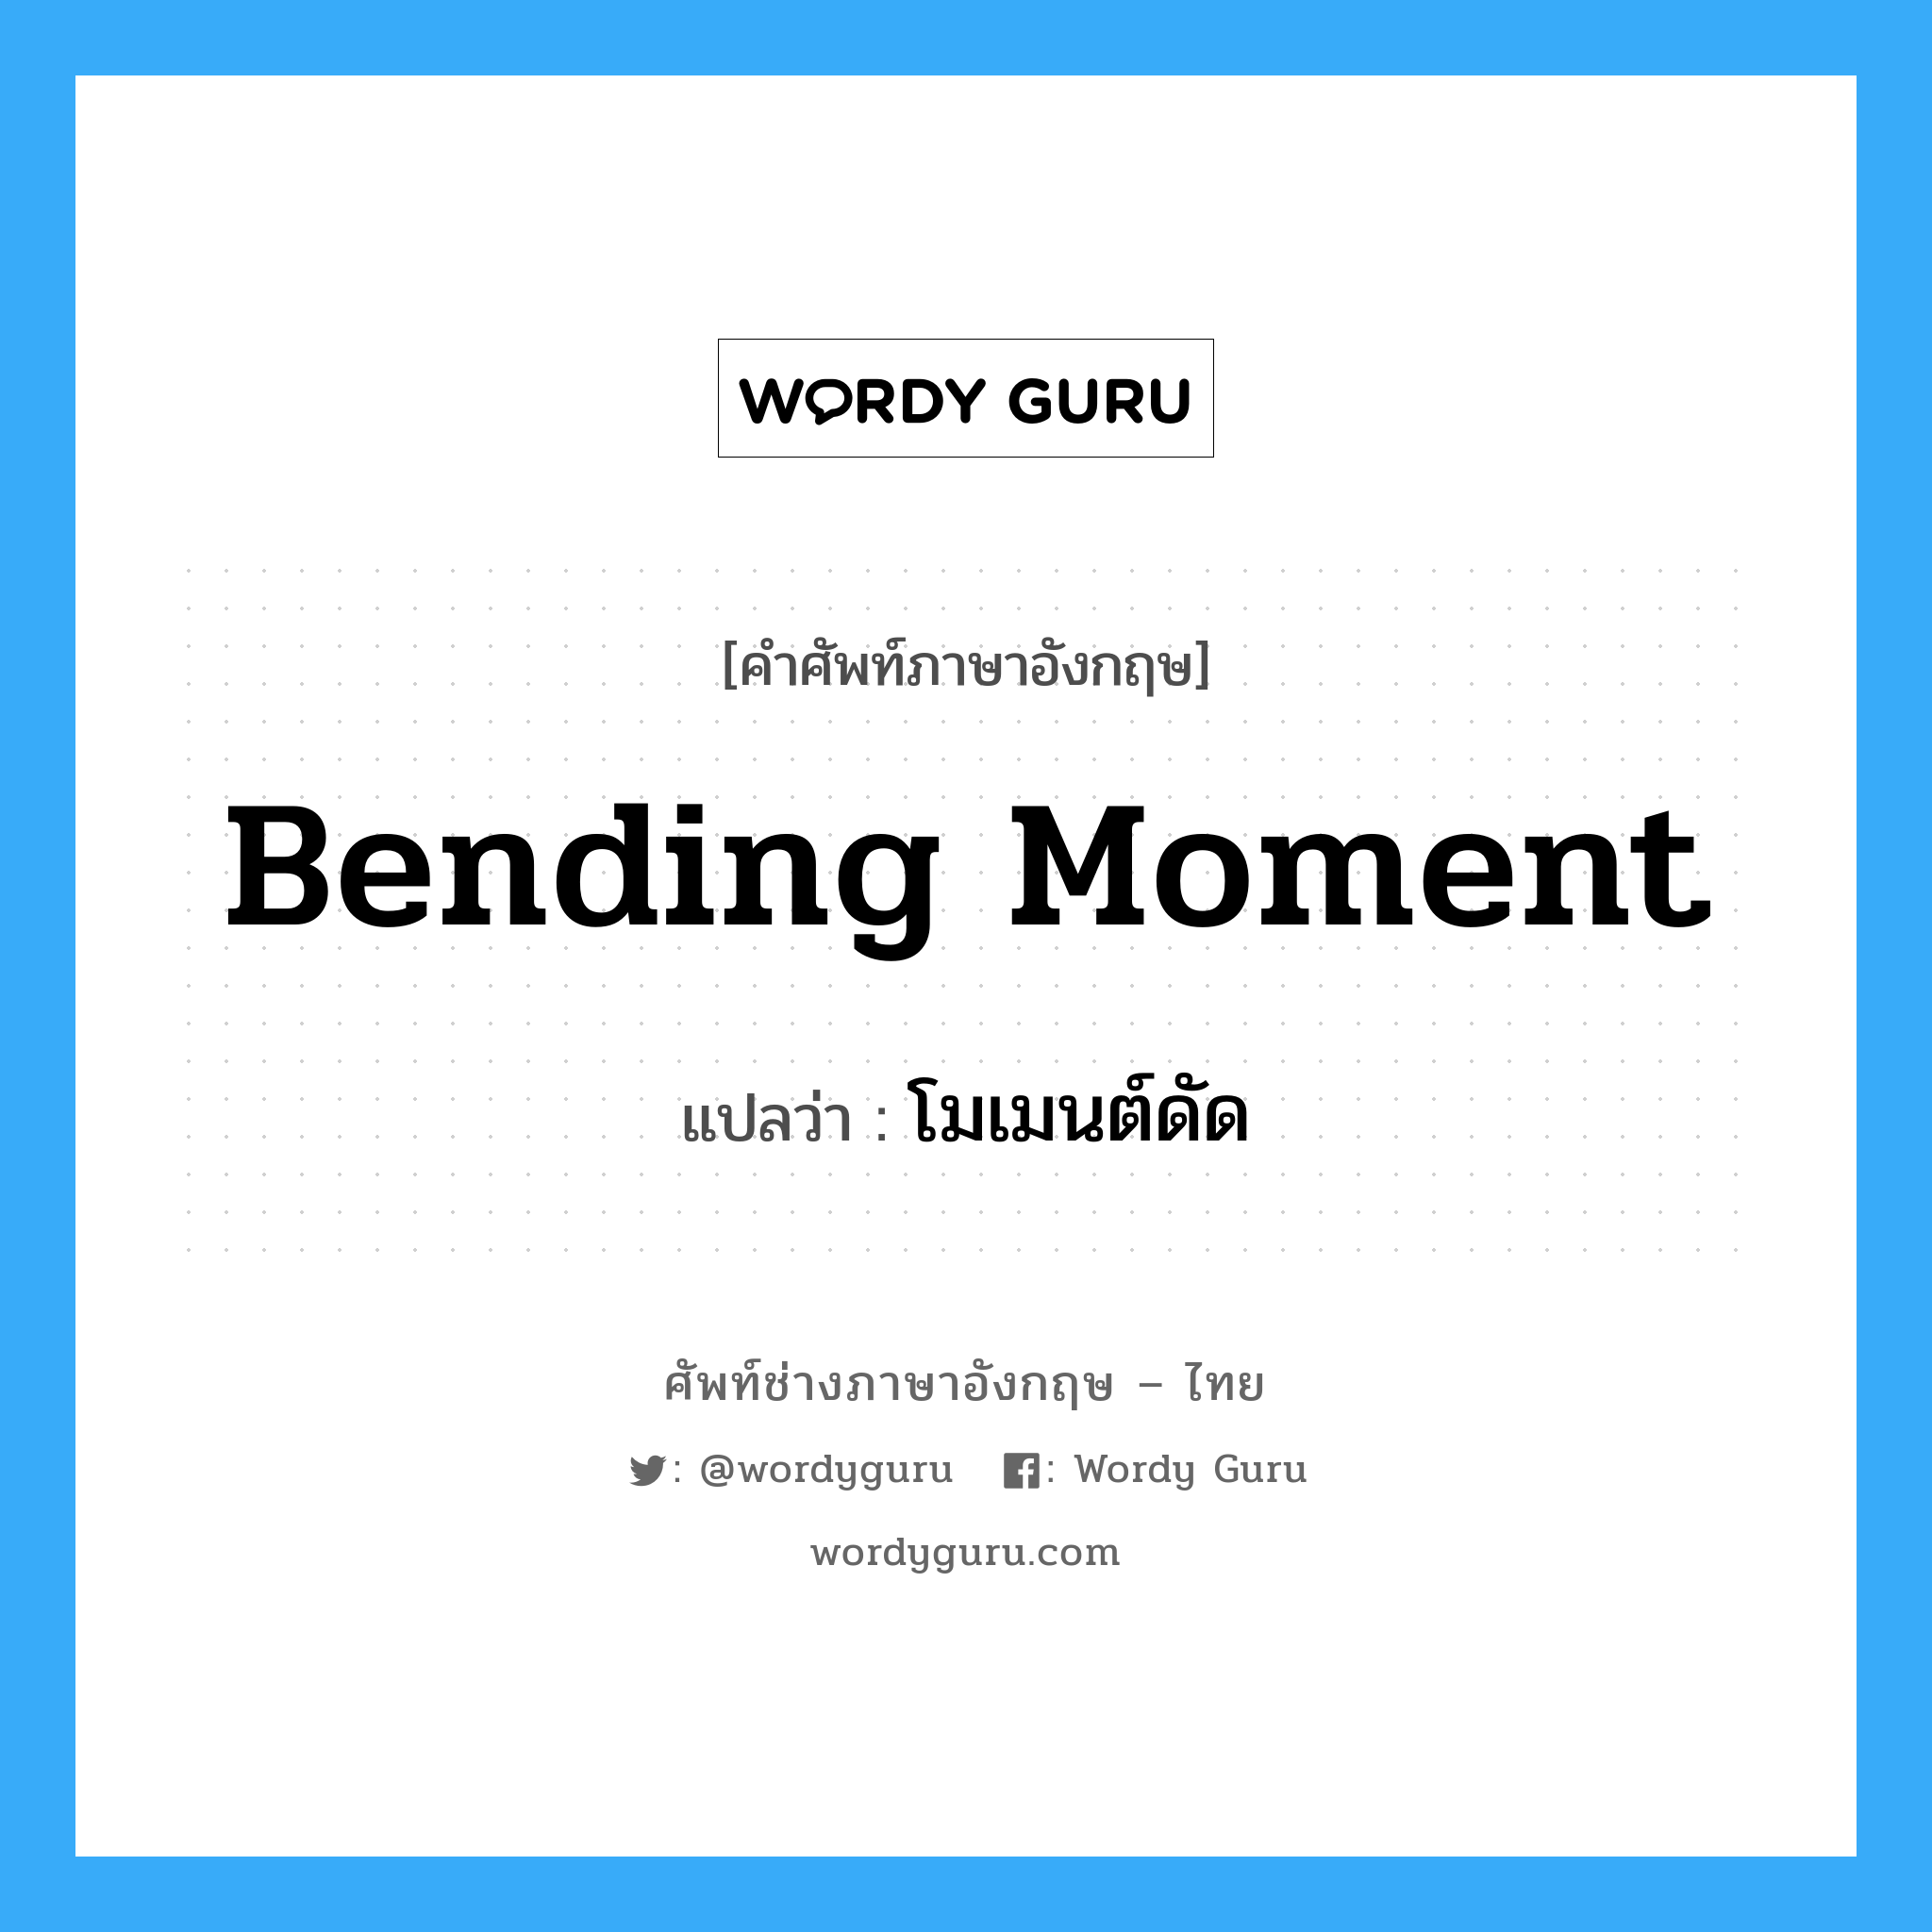 โมเมนต์ดัด ภาษาอังกฤษ?, คำศัพท์ช่างภาษาอังกฤษ - ไทย โมเมนต์ดัด คำศัพท์ภาษาอังกฤษ โมเมนต์ดัด แปลว่า bending moment